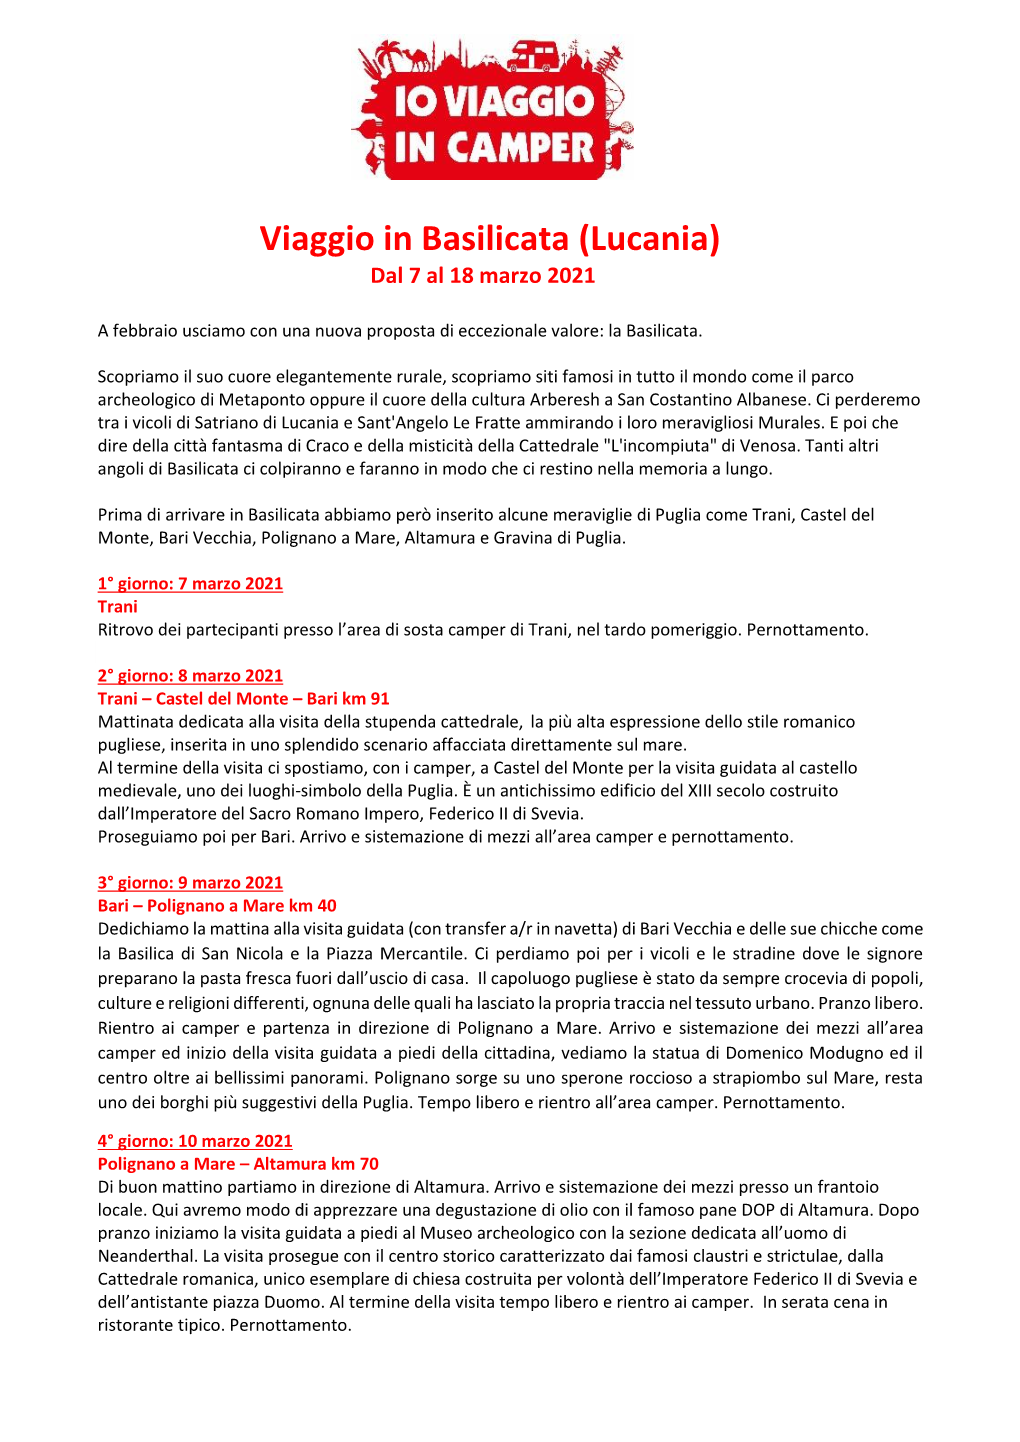 Viaggio in Basilicata (Lucania) Dal 7 Al 18 Marzo 2021